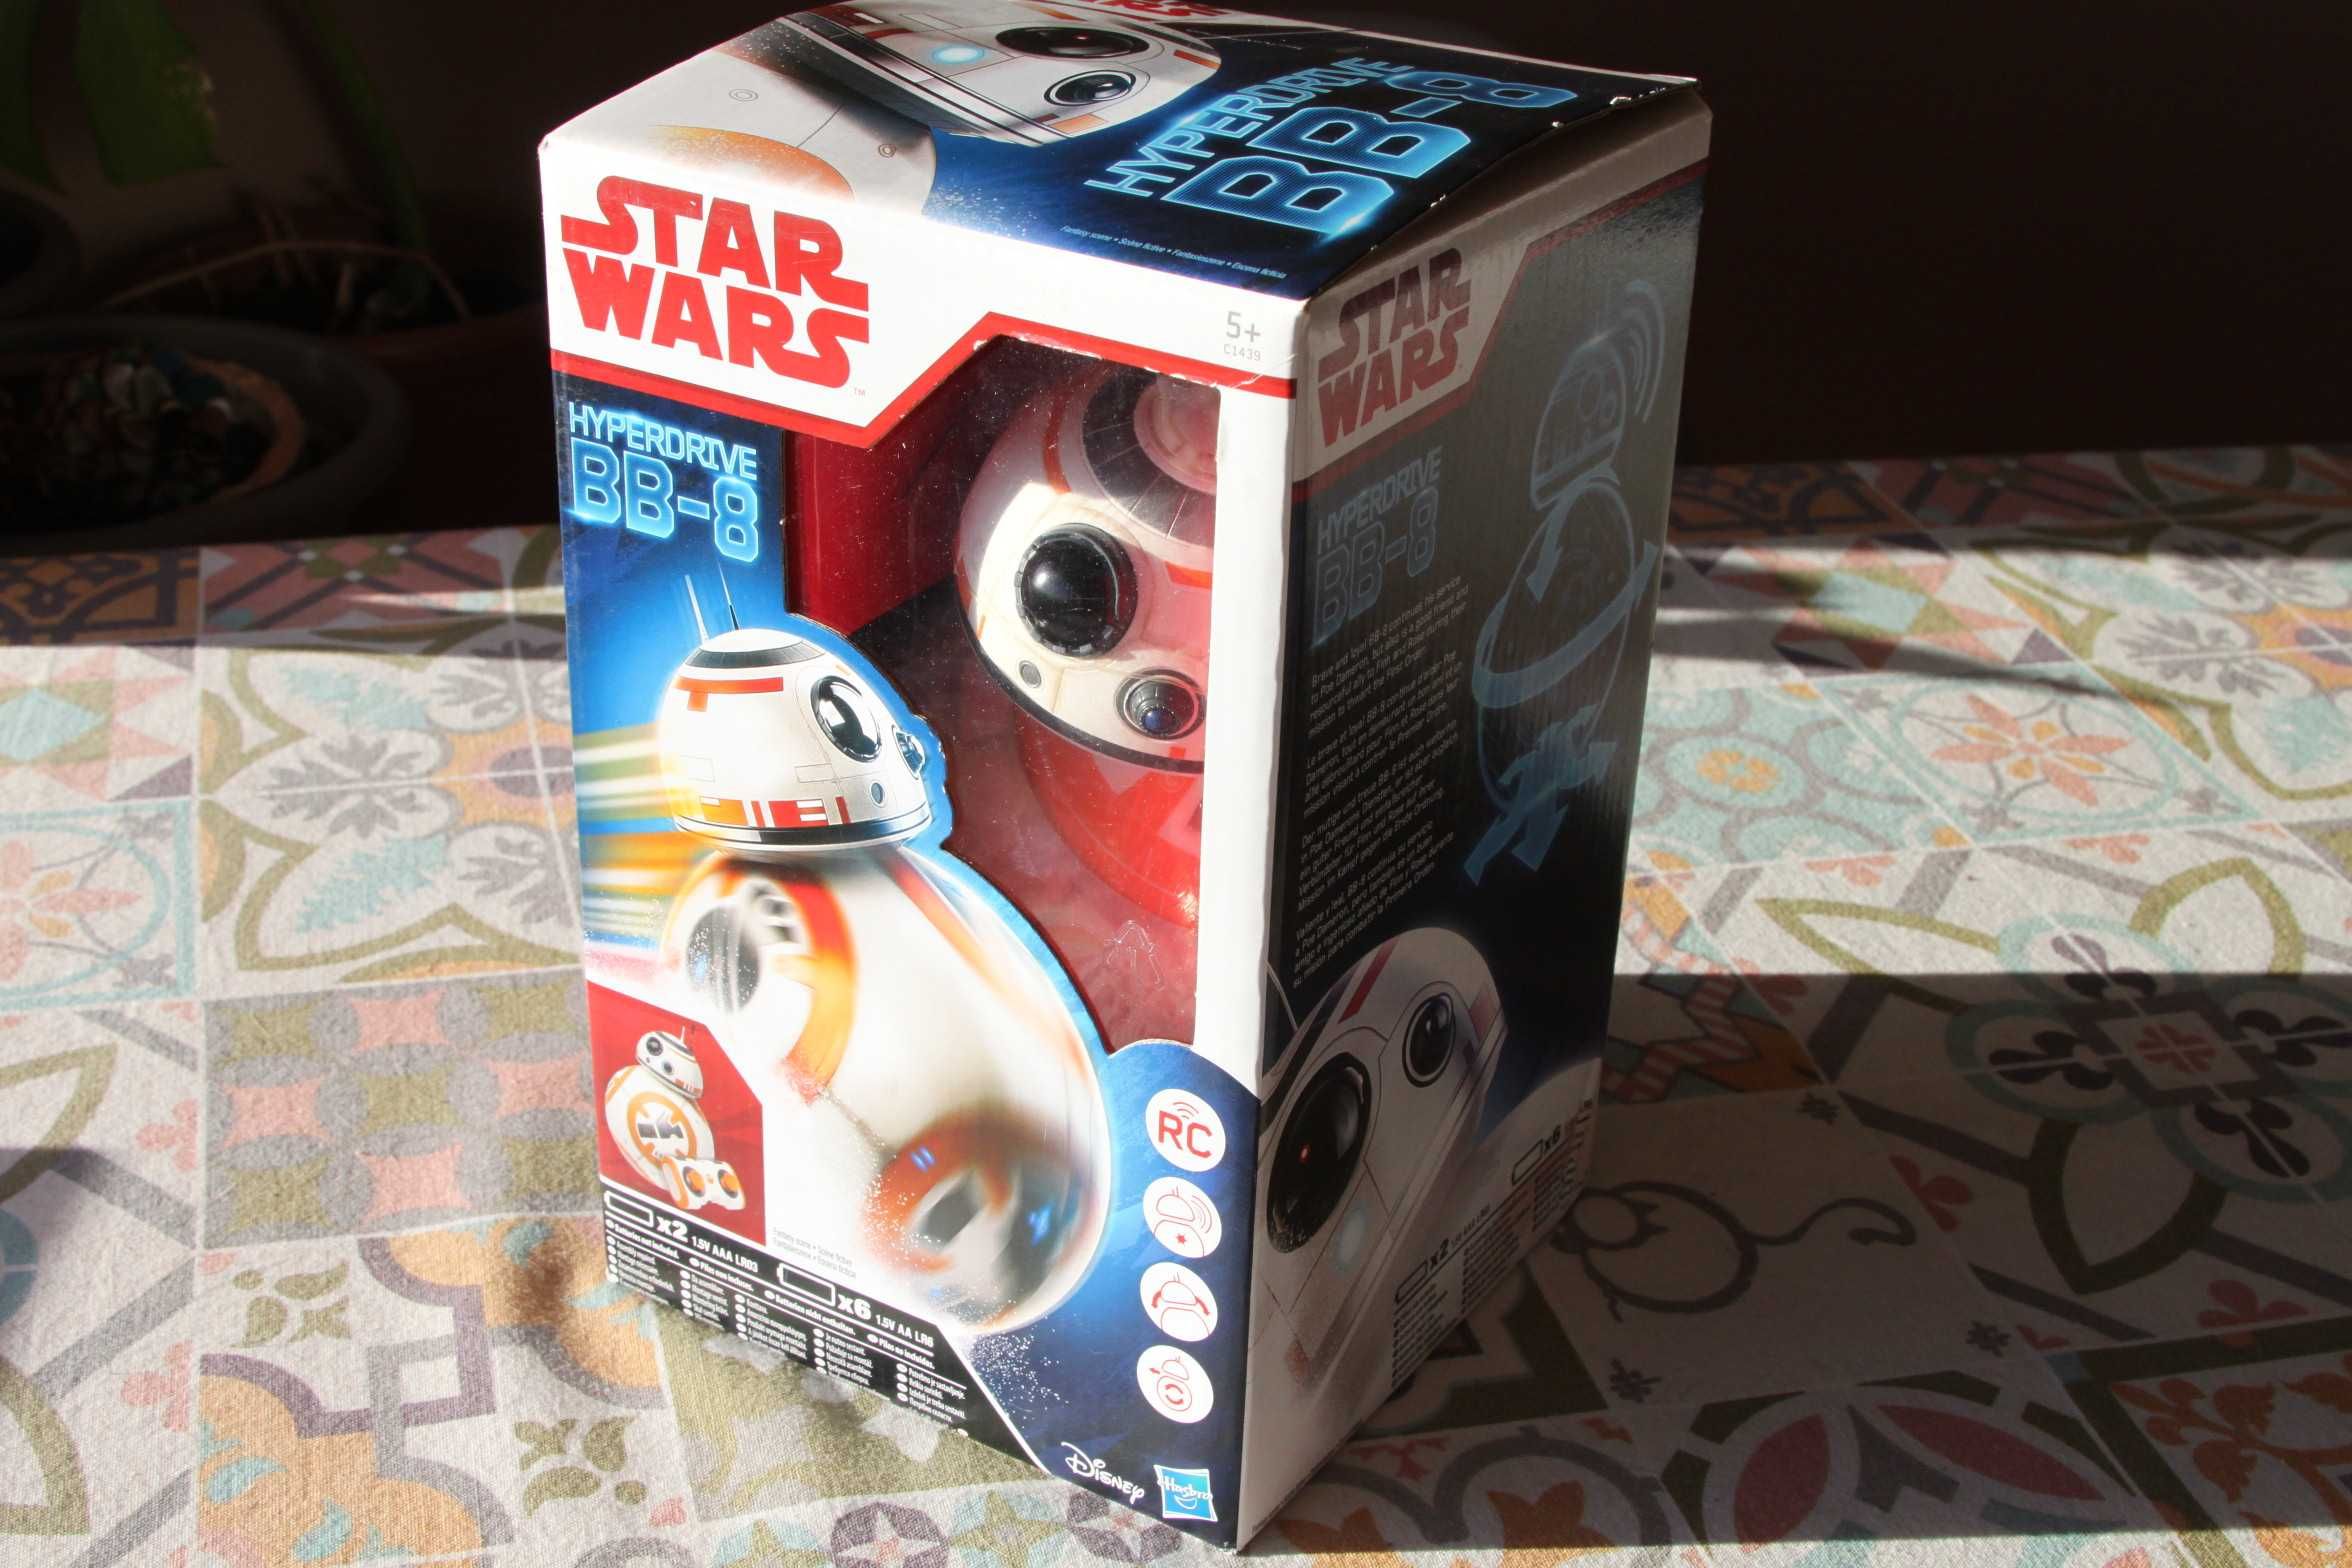 Star Wars Hyperdrive BB-8 Disney com controlo remoto - Novo e Selado